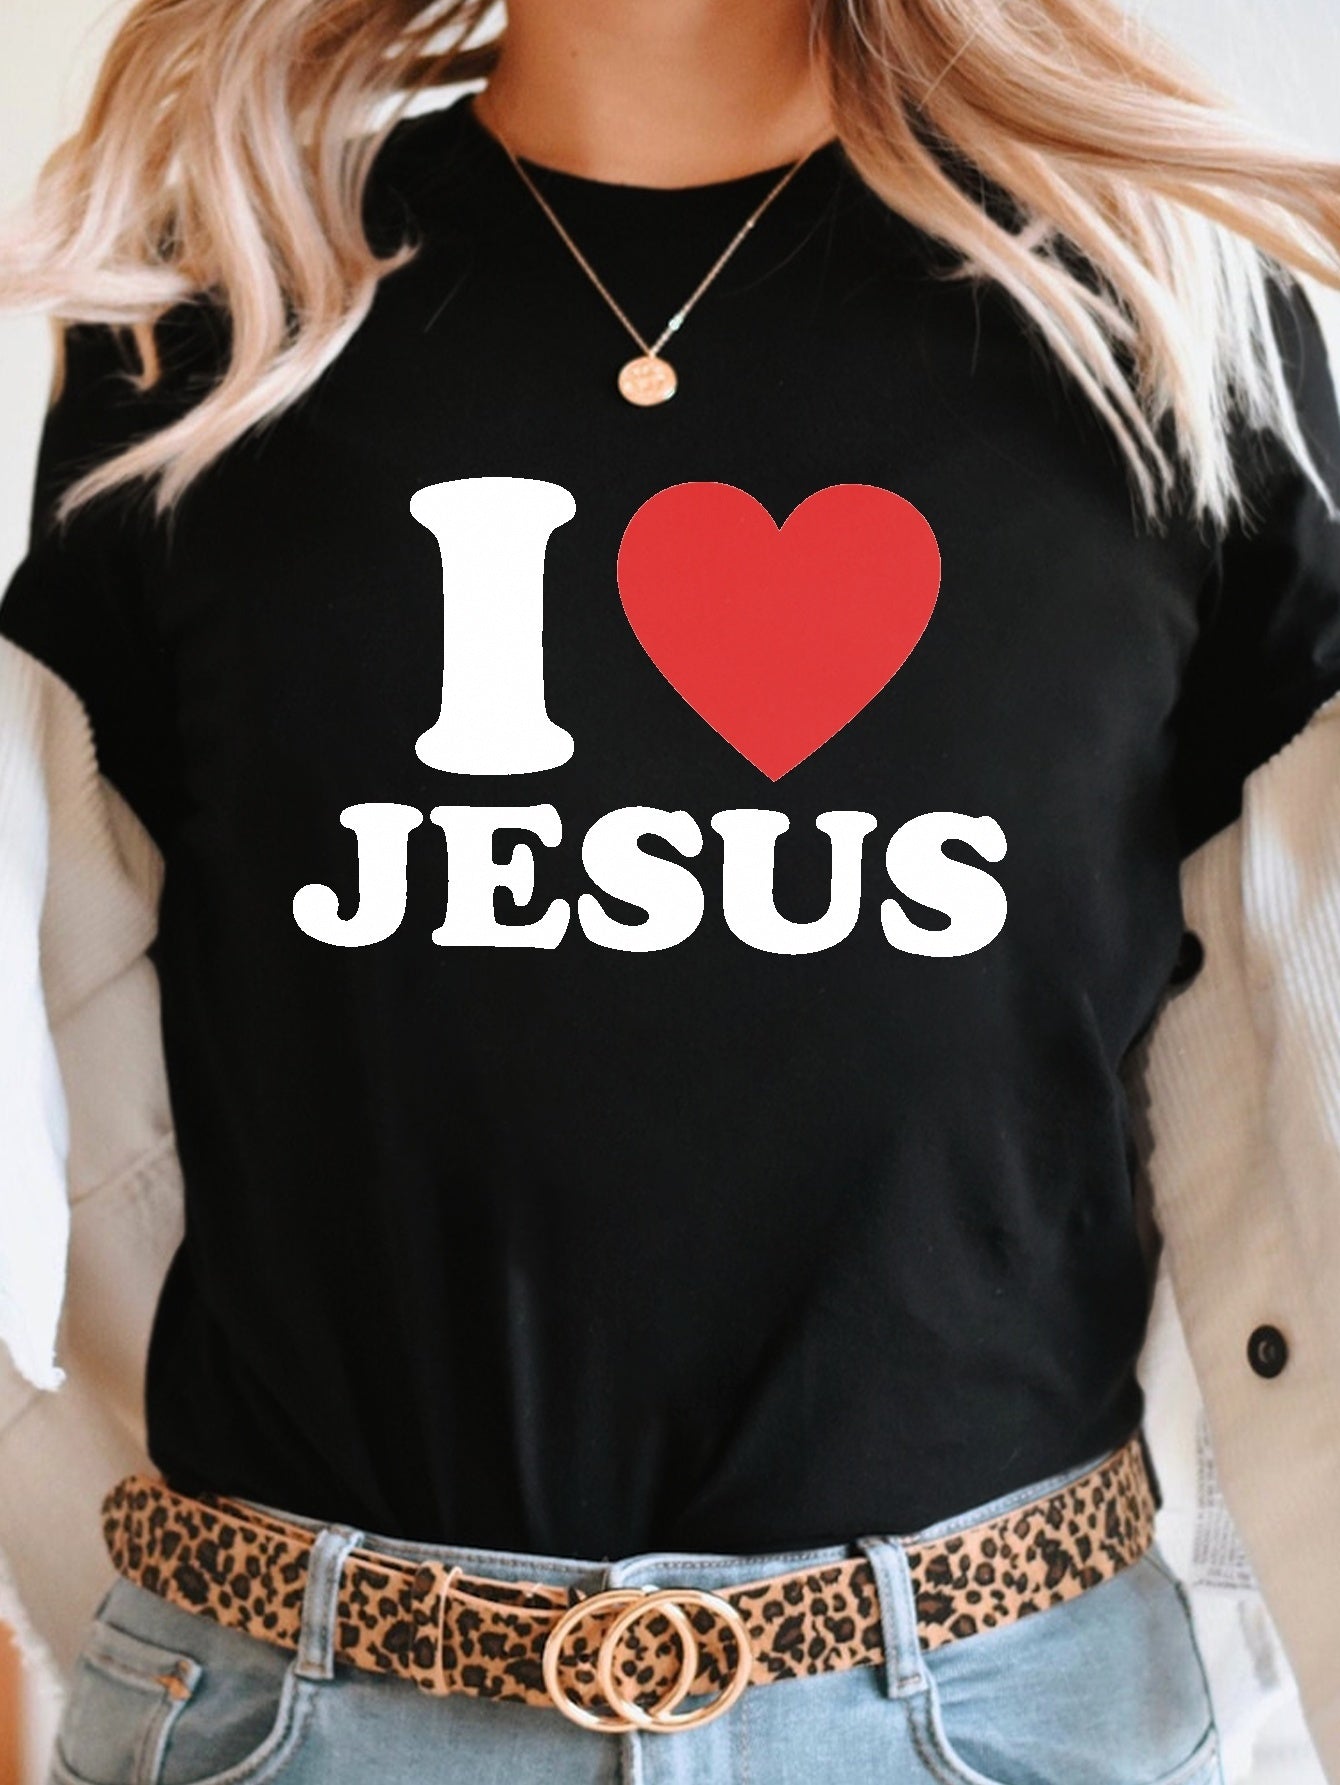 I Love Jesus Women's Christian T-shirt claimedbygoddesigns